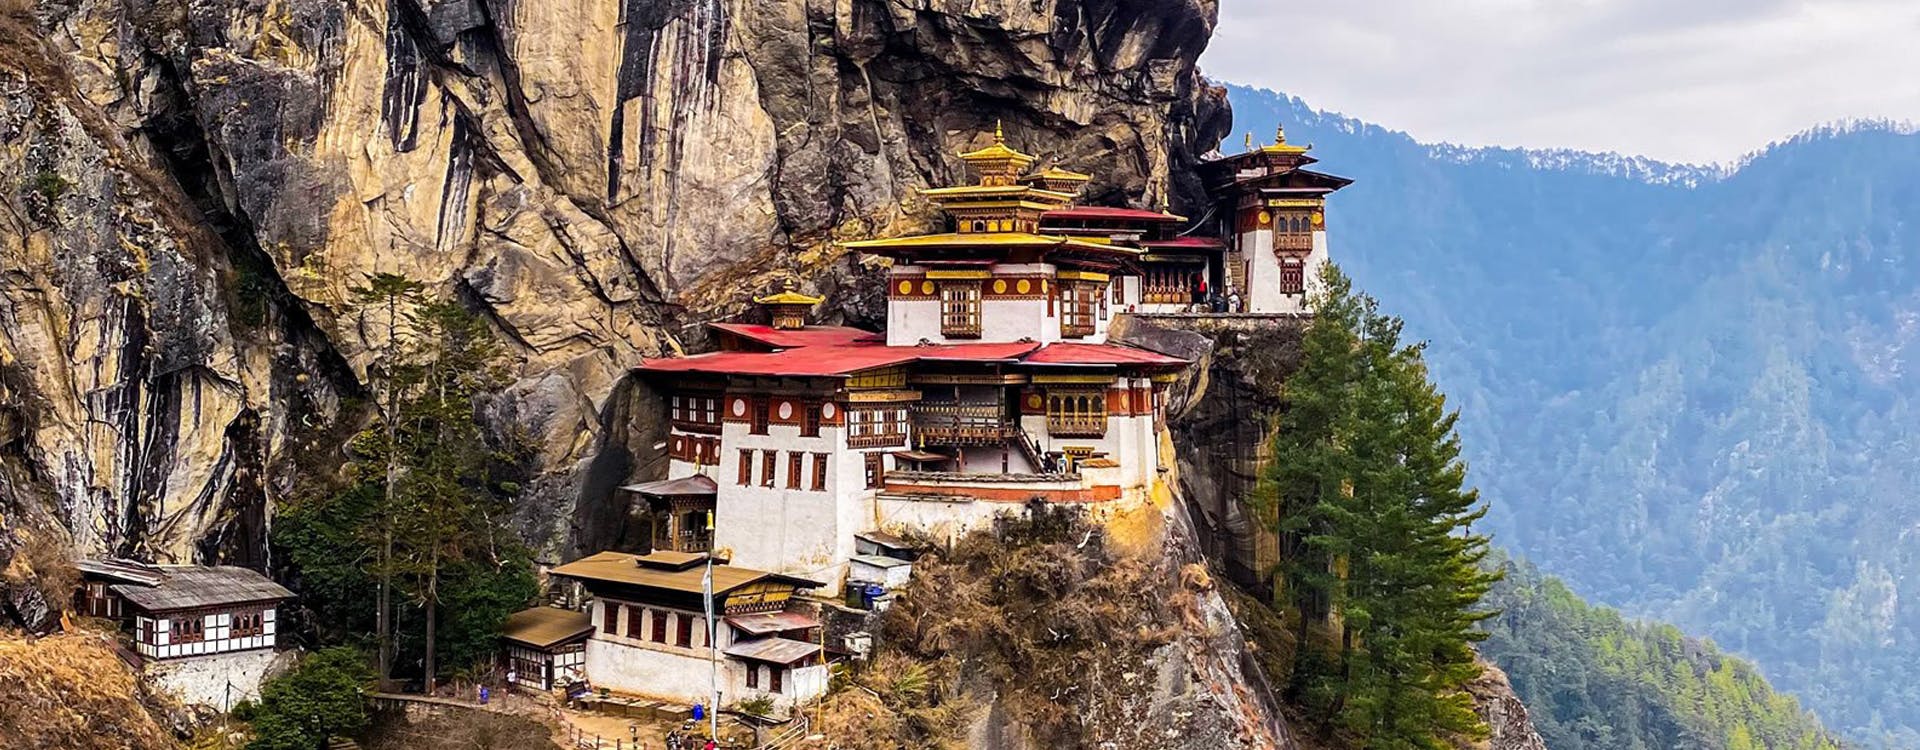 Bhutan Highlights Tours